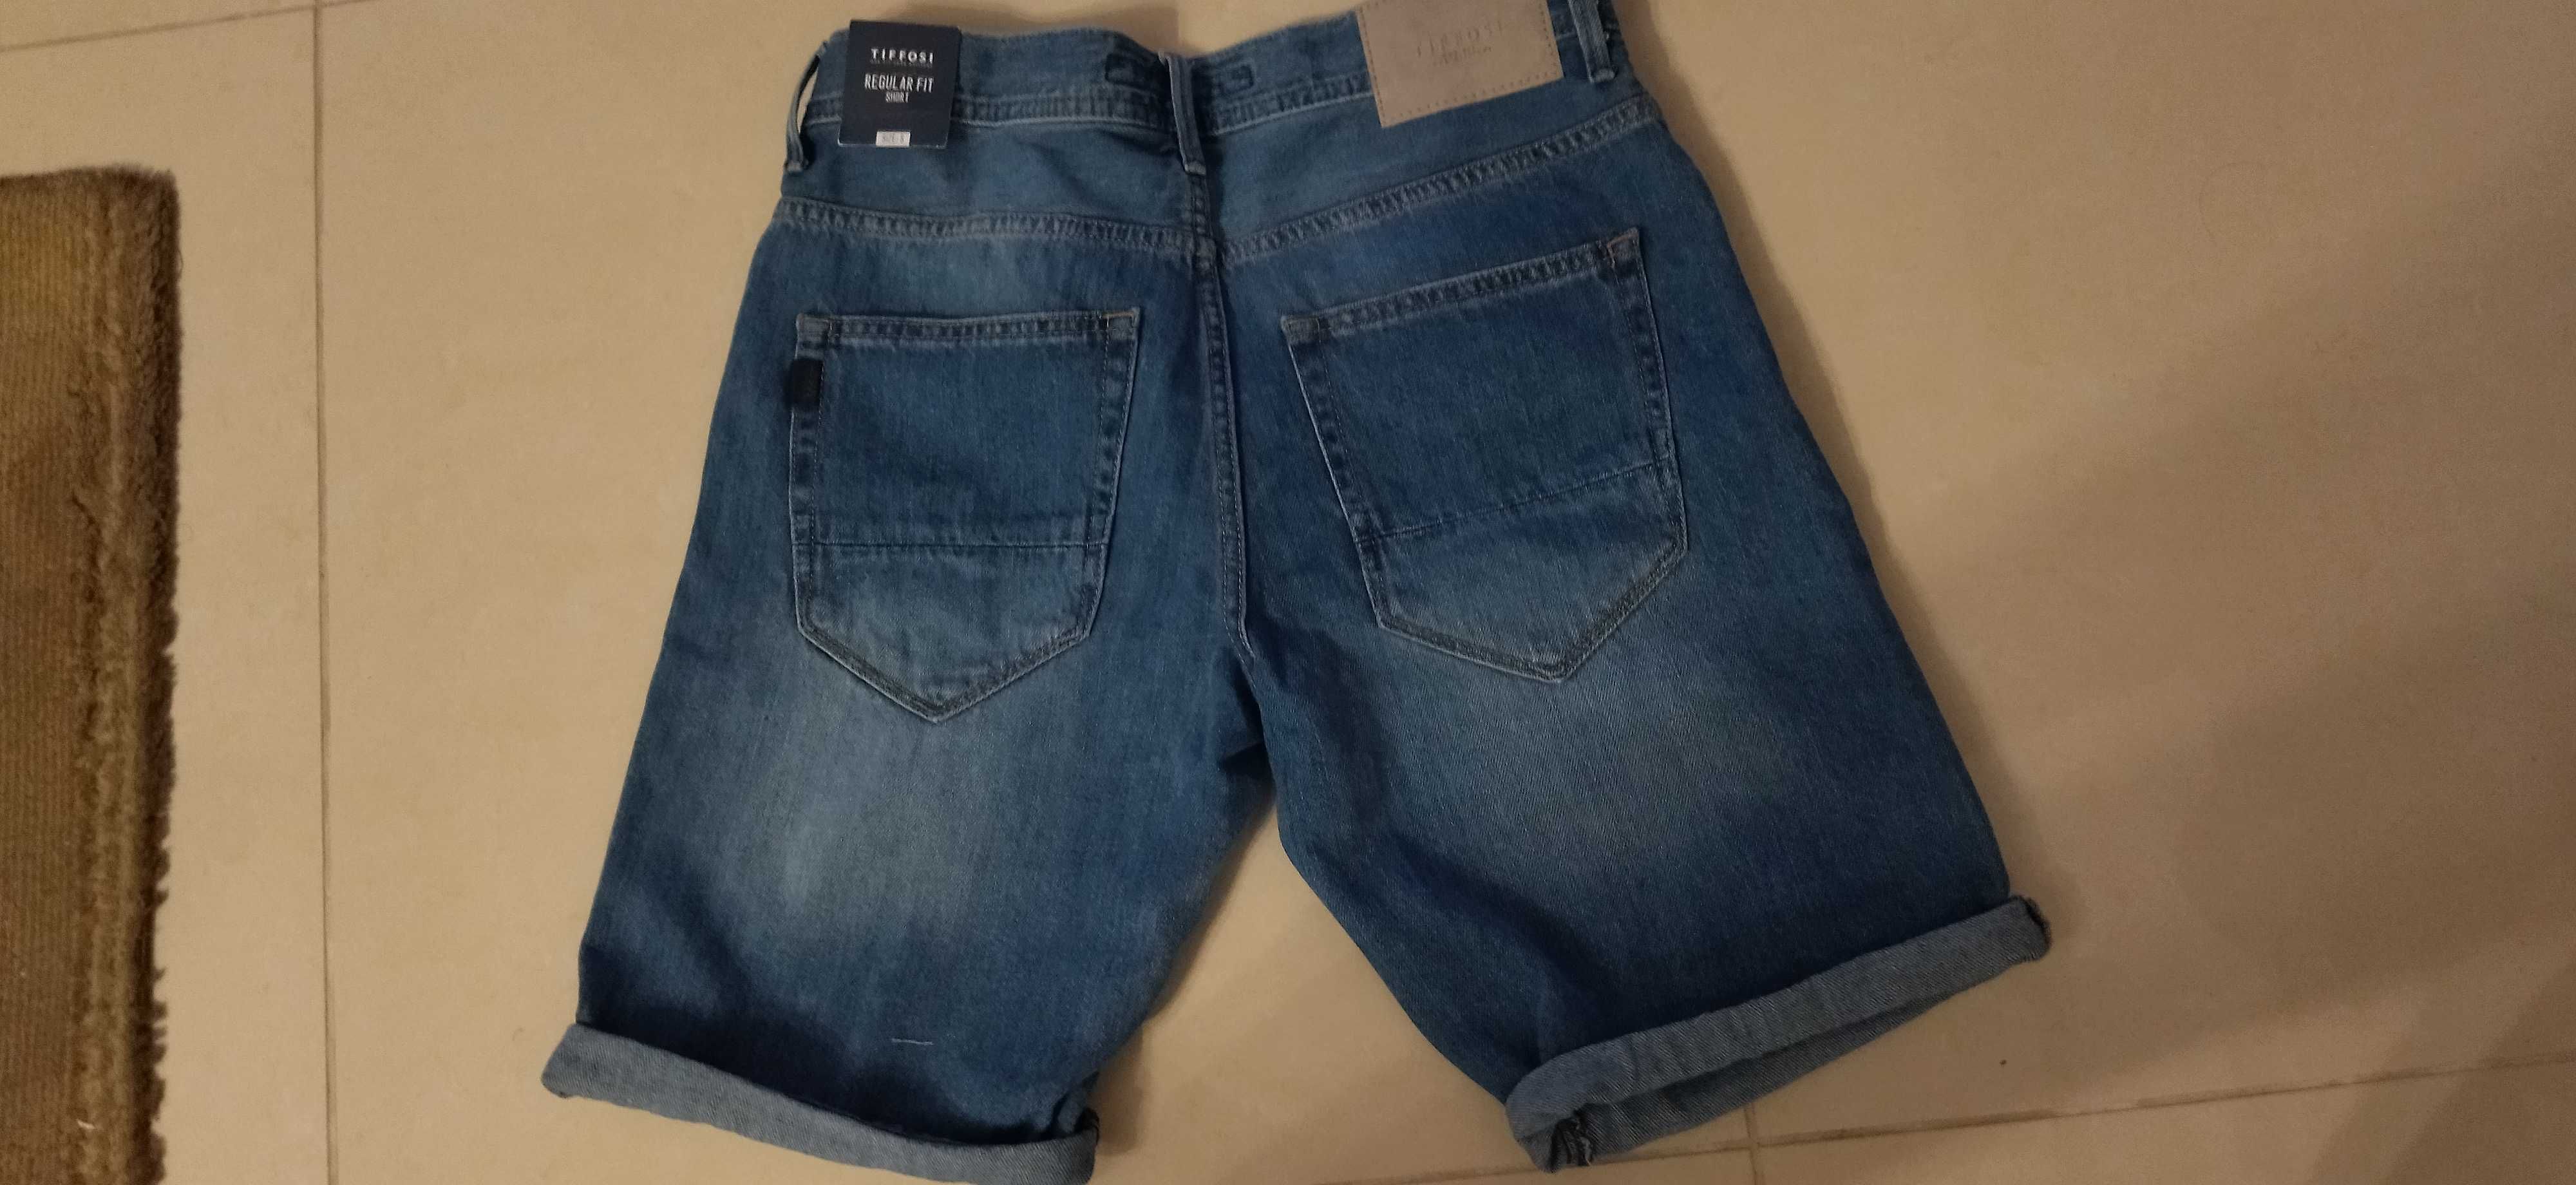 Calção Jeans Tiffosi - S - Novo preço